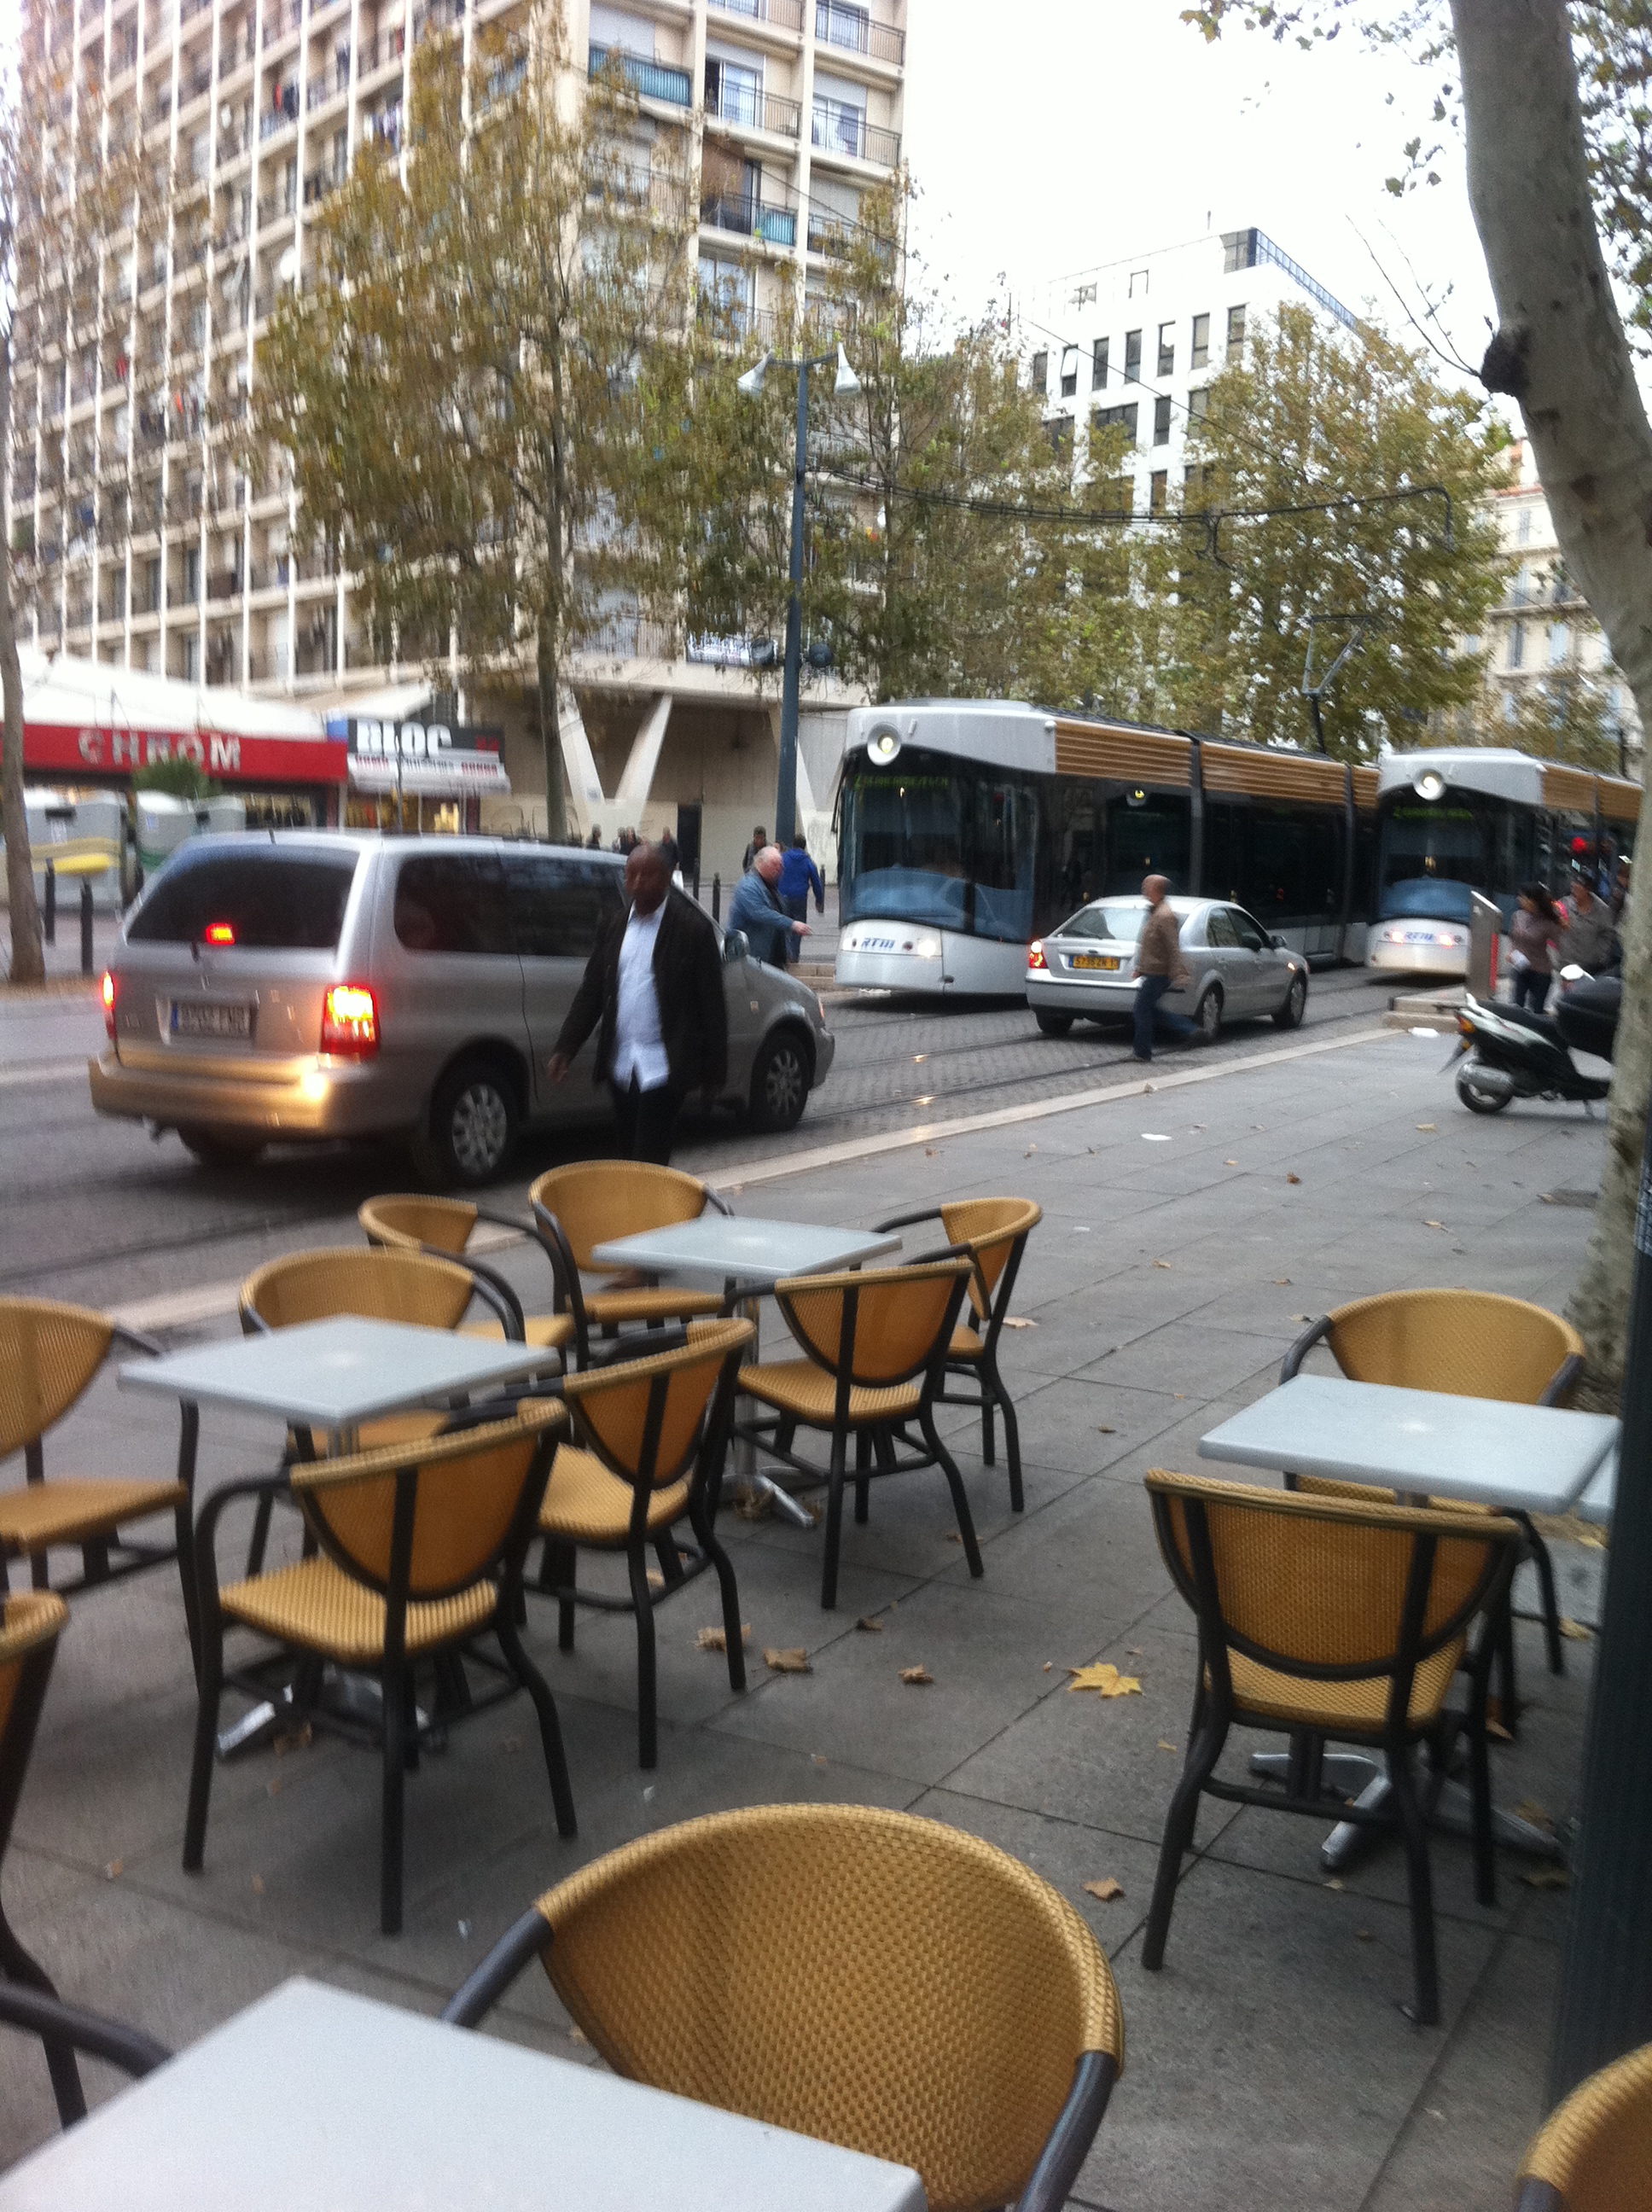 Insolite et scandaleux : La Police bloque le tramway Cours Belsunce !